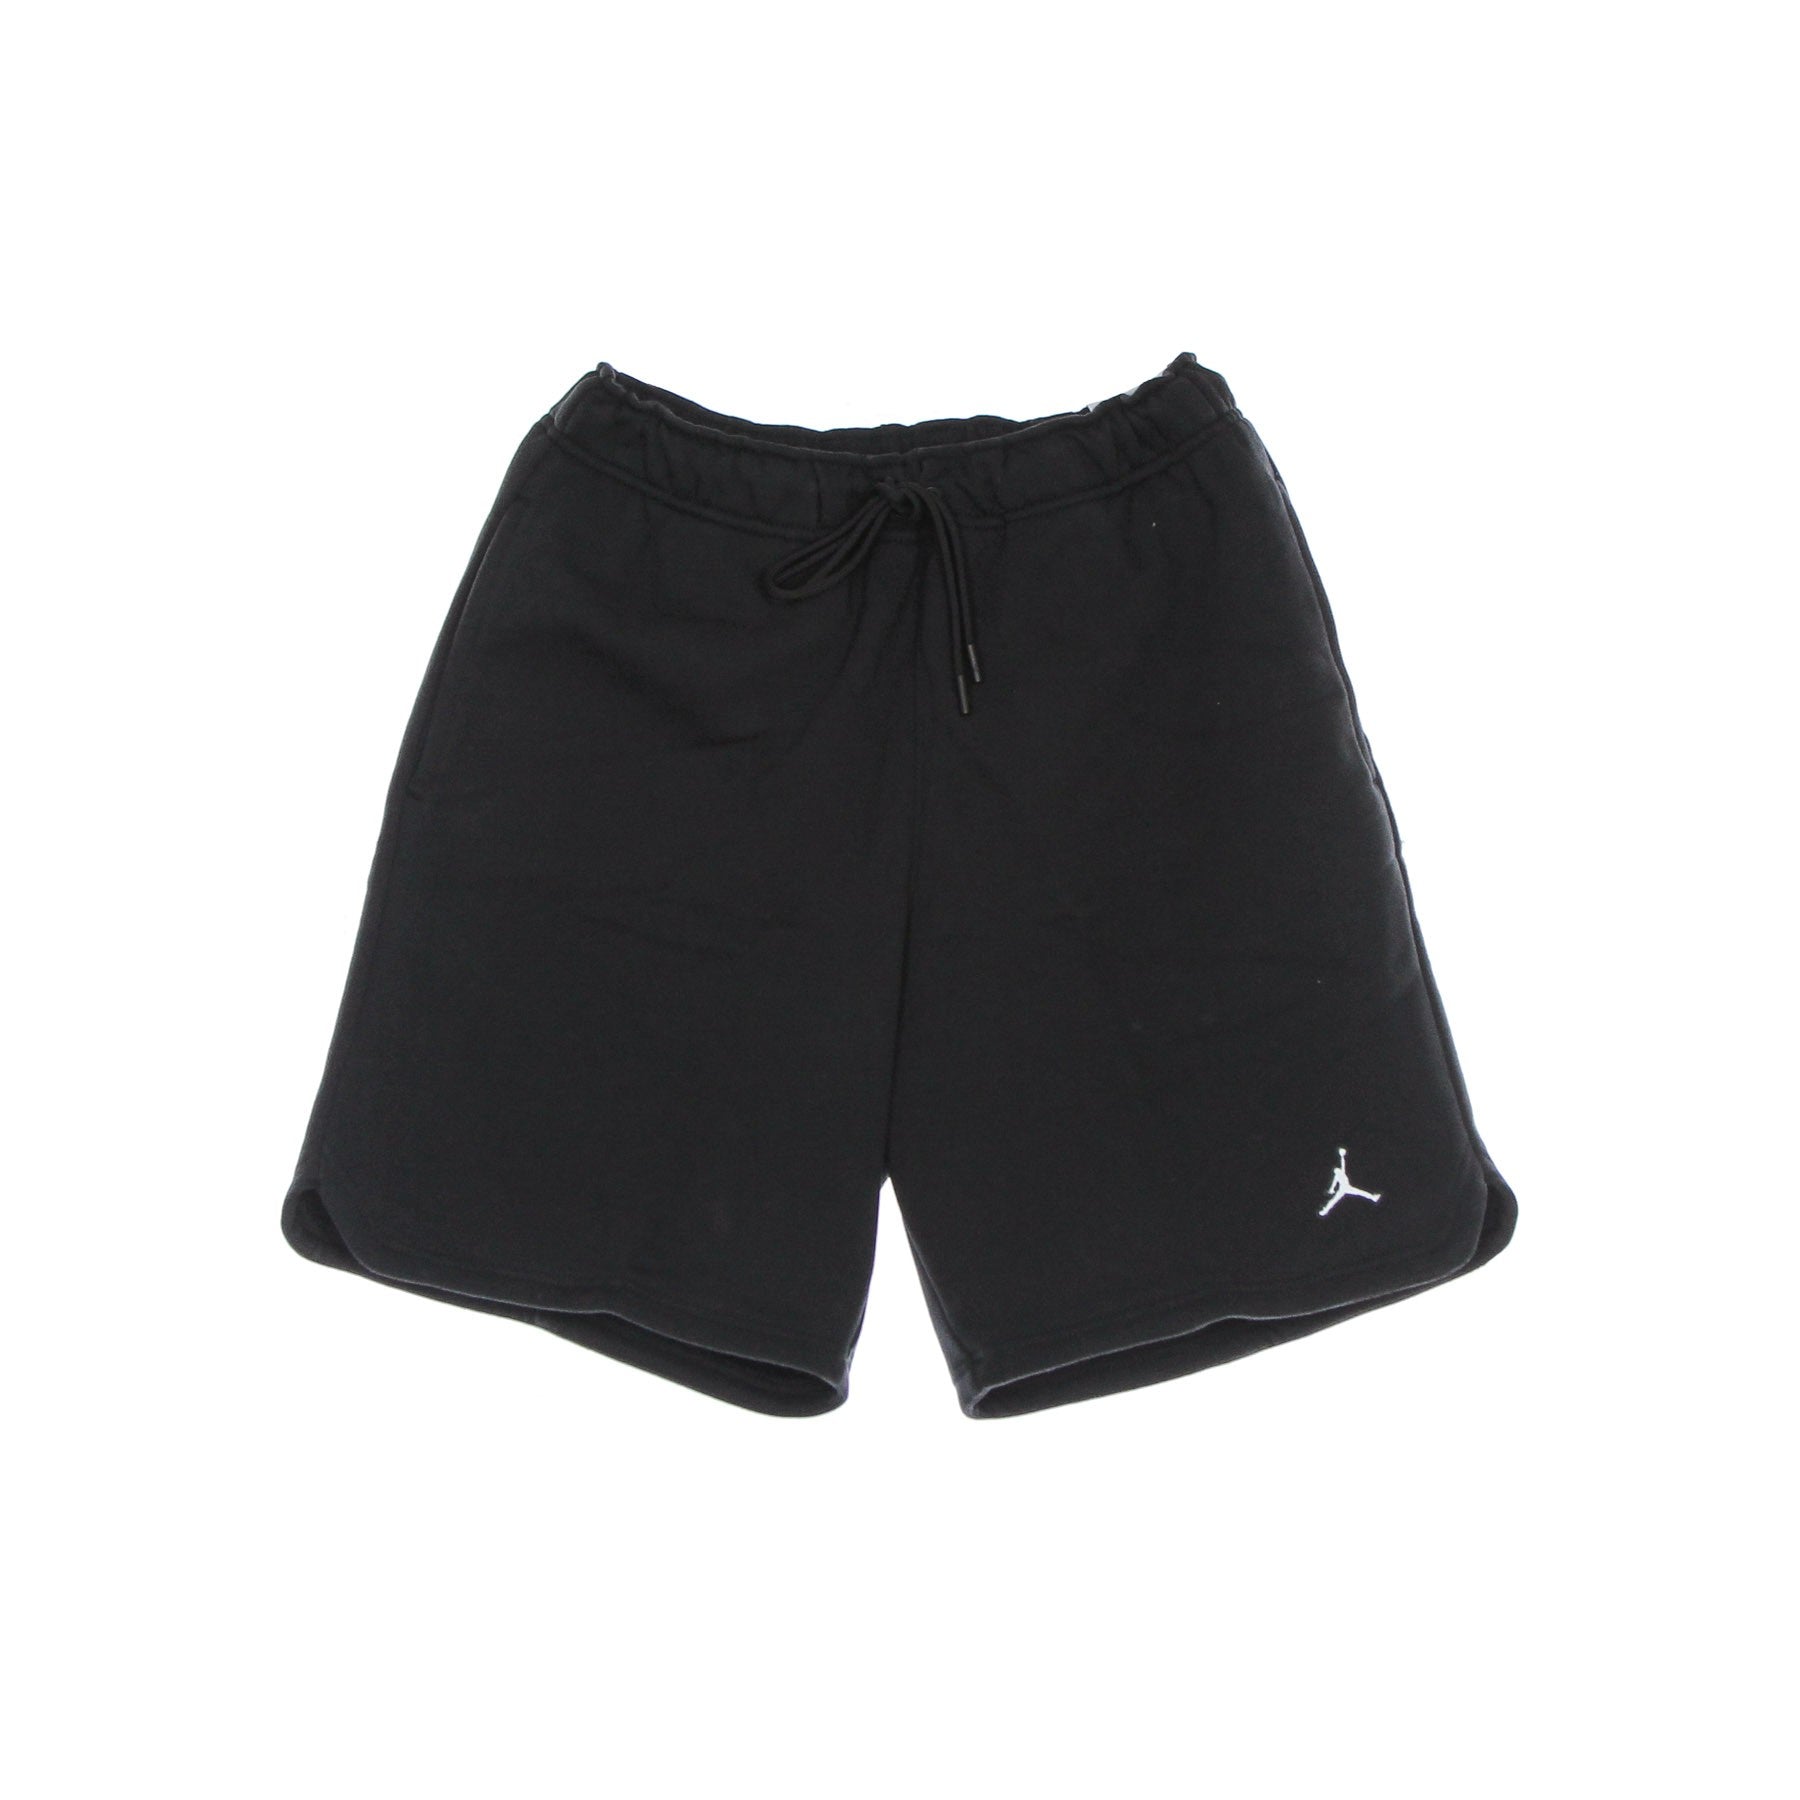 Jordan, Pantalone Corto Tuta Felpato Uomo Essentials Fleece Short, Black/white